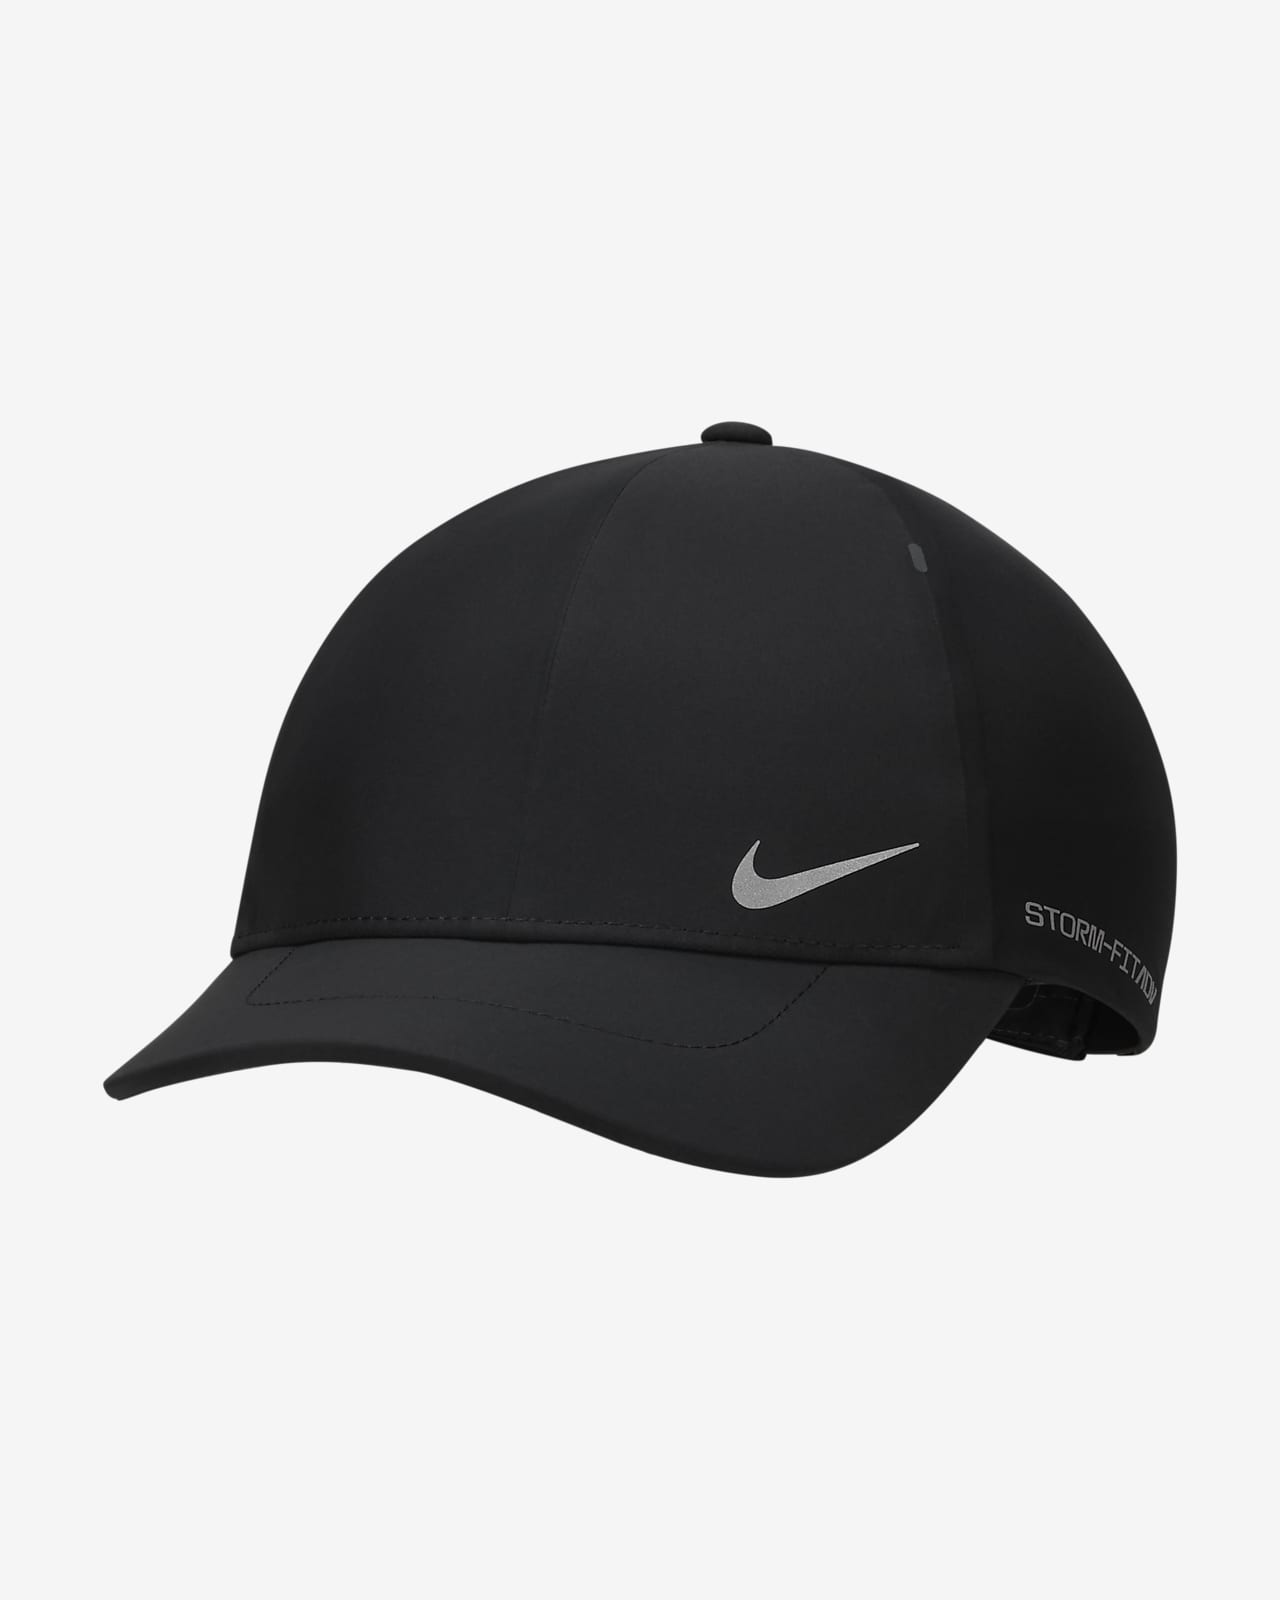 Σταθερό καπέλο jockey AeroBill Nike Storm-FIT ADV Club